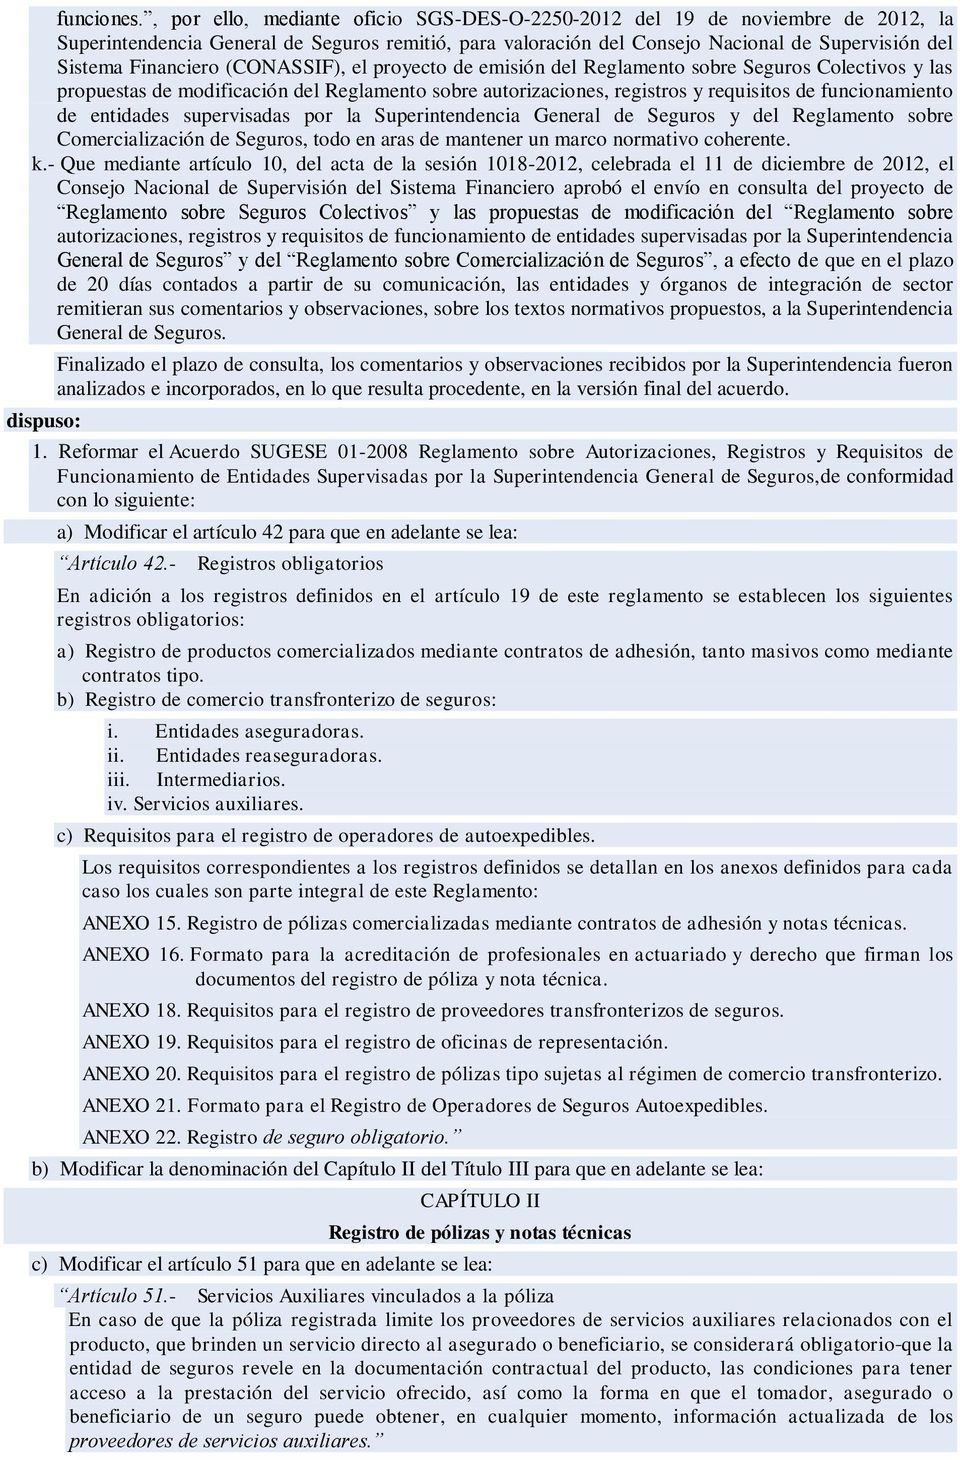 (CONASSIF), el proyecto de emisión del Reglamento sobre Seguros Colectivos y las propuestas de modificación del Reglamento sobre autorizaciones, registros y requisitos de funcionamiento de entidades